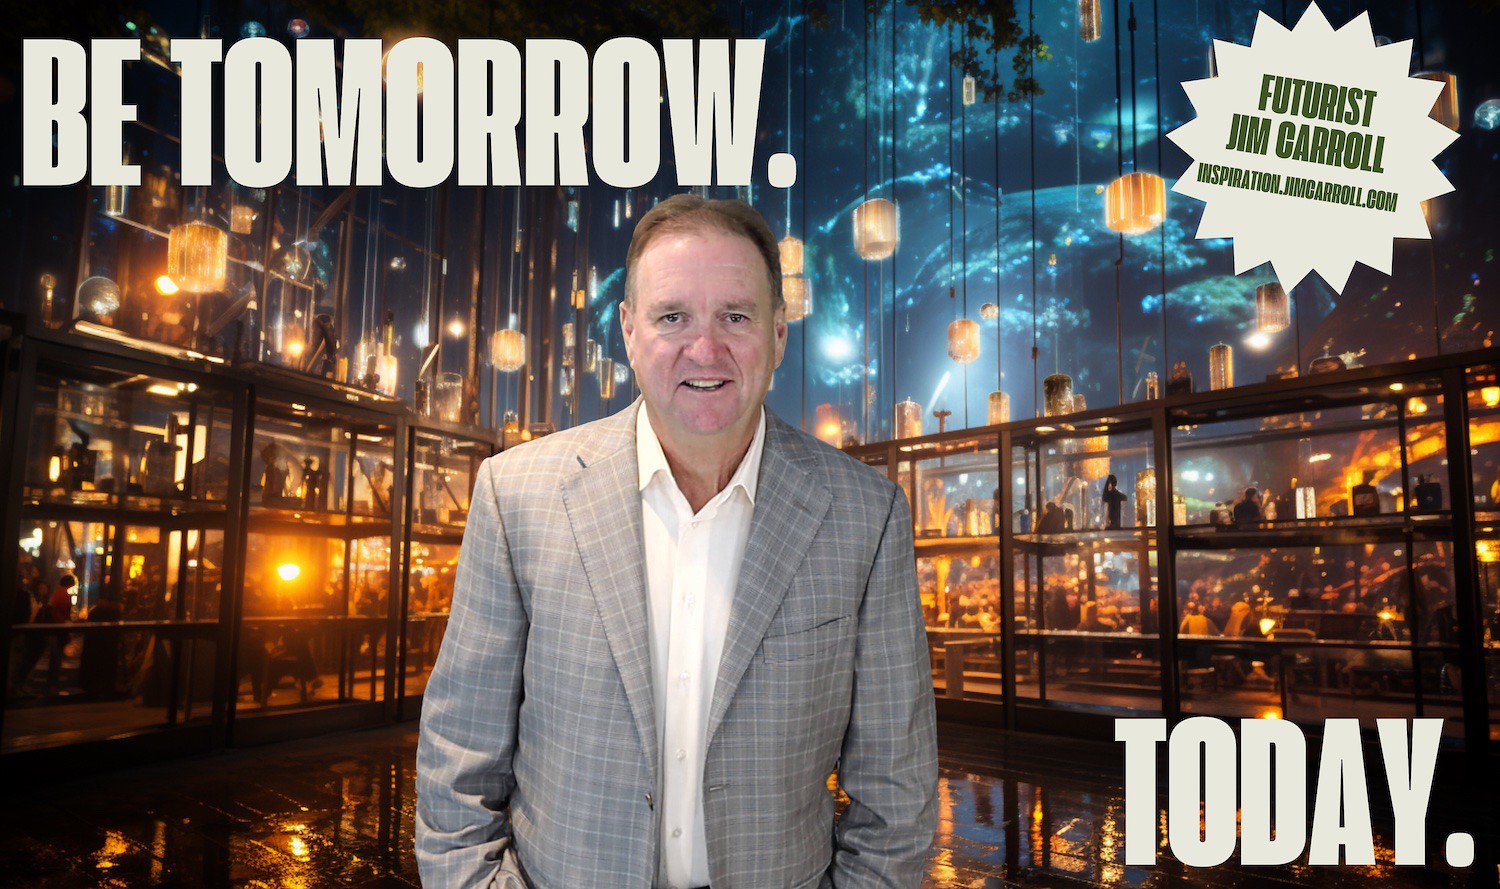 "Be tomorrow. Today." - Futurist Jim Carroll